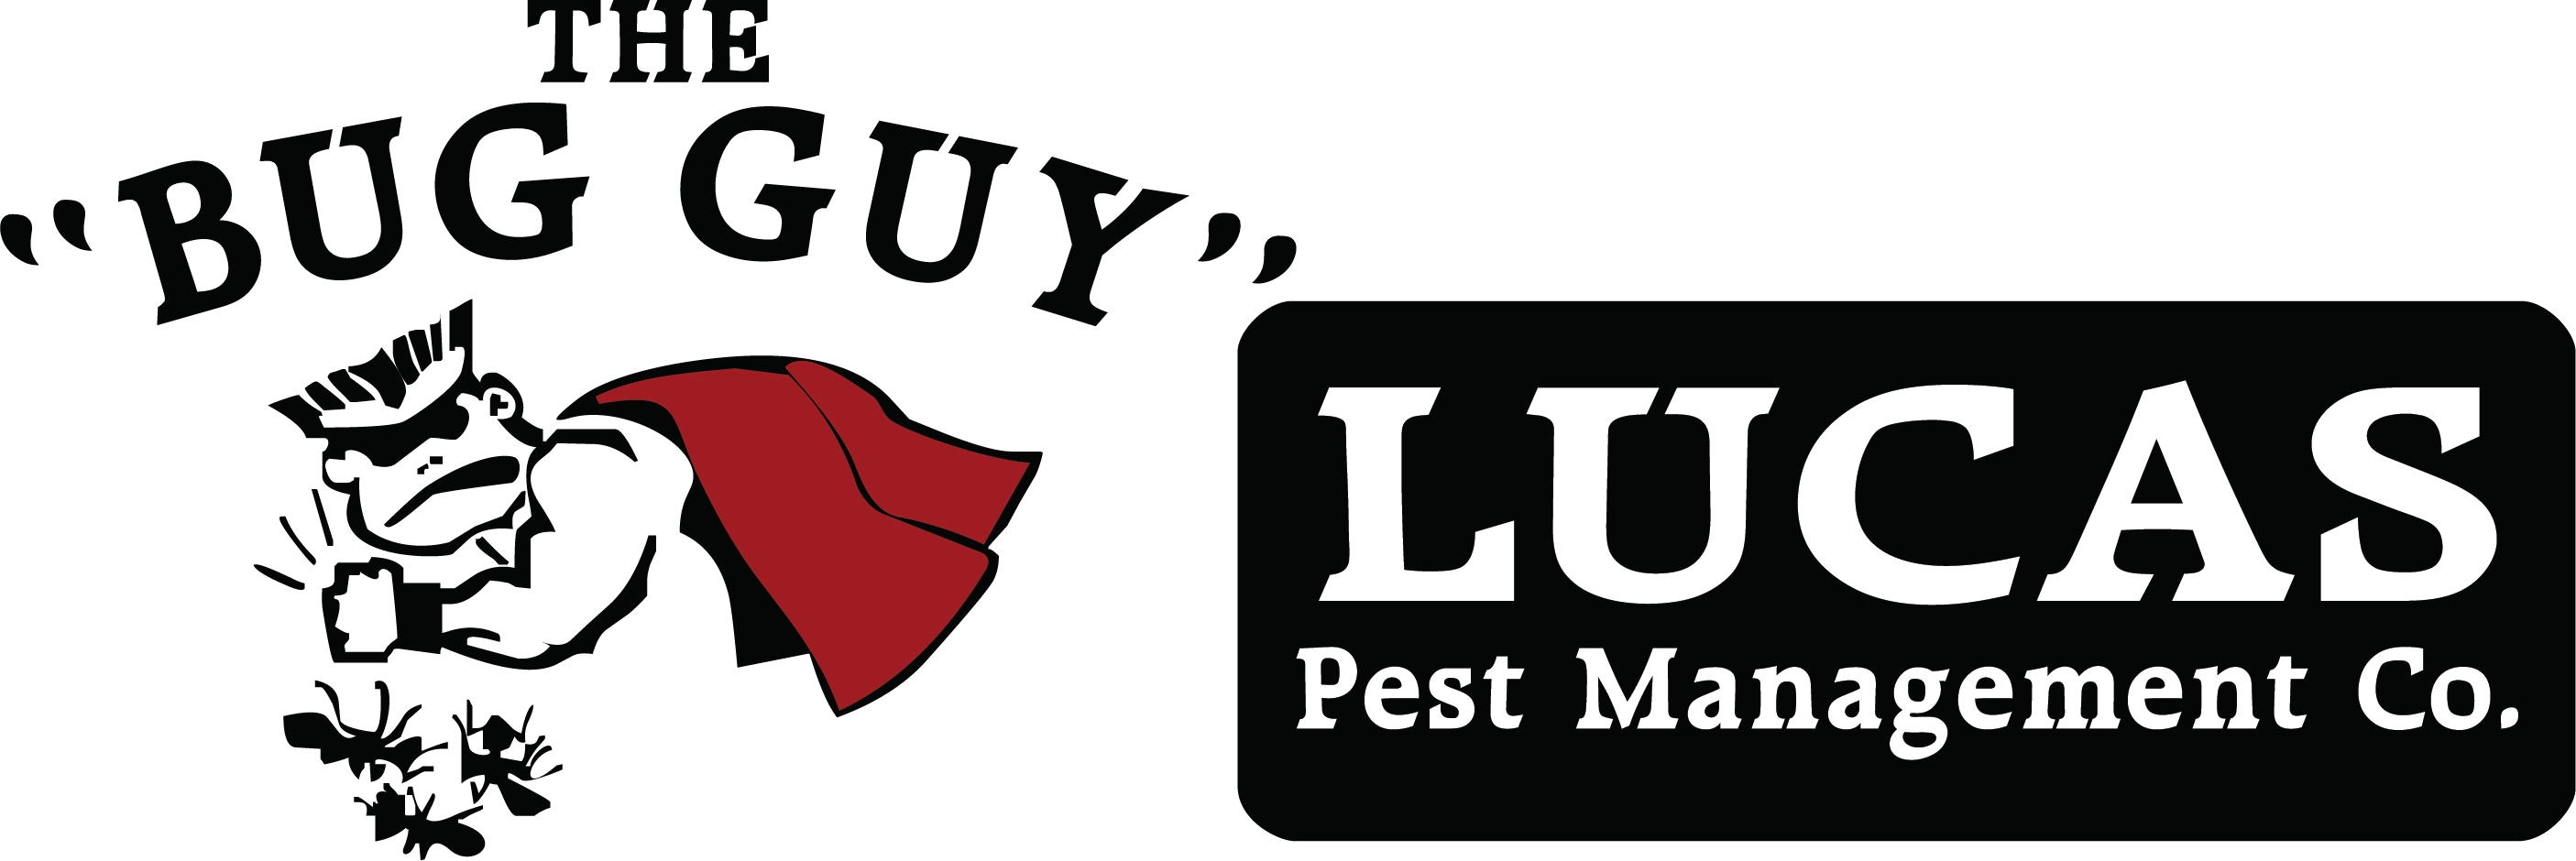 Lucas Pest Management Co Logo